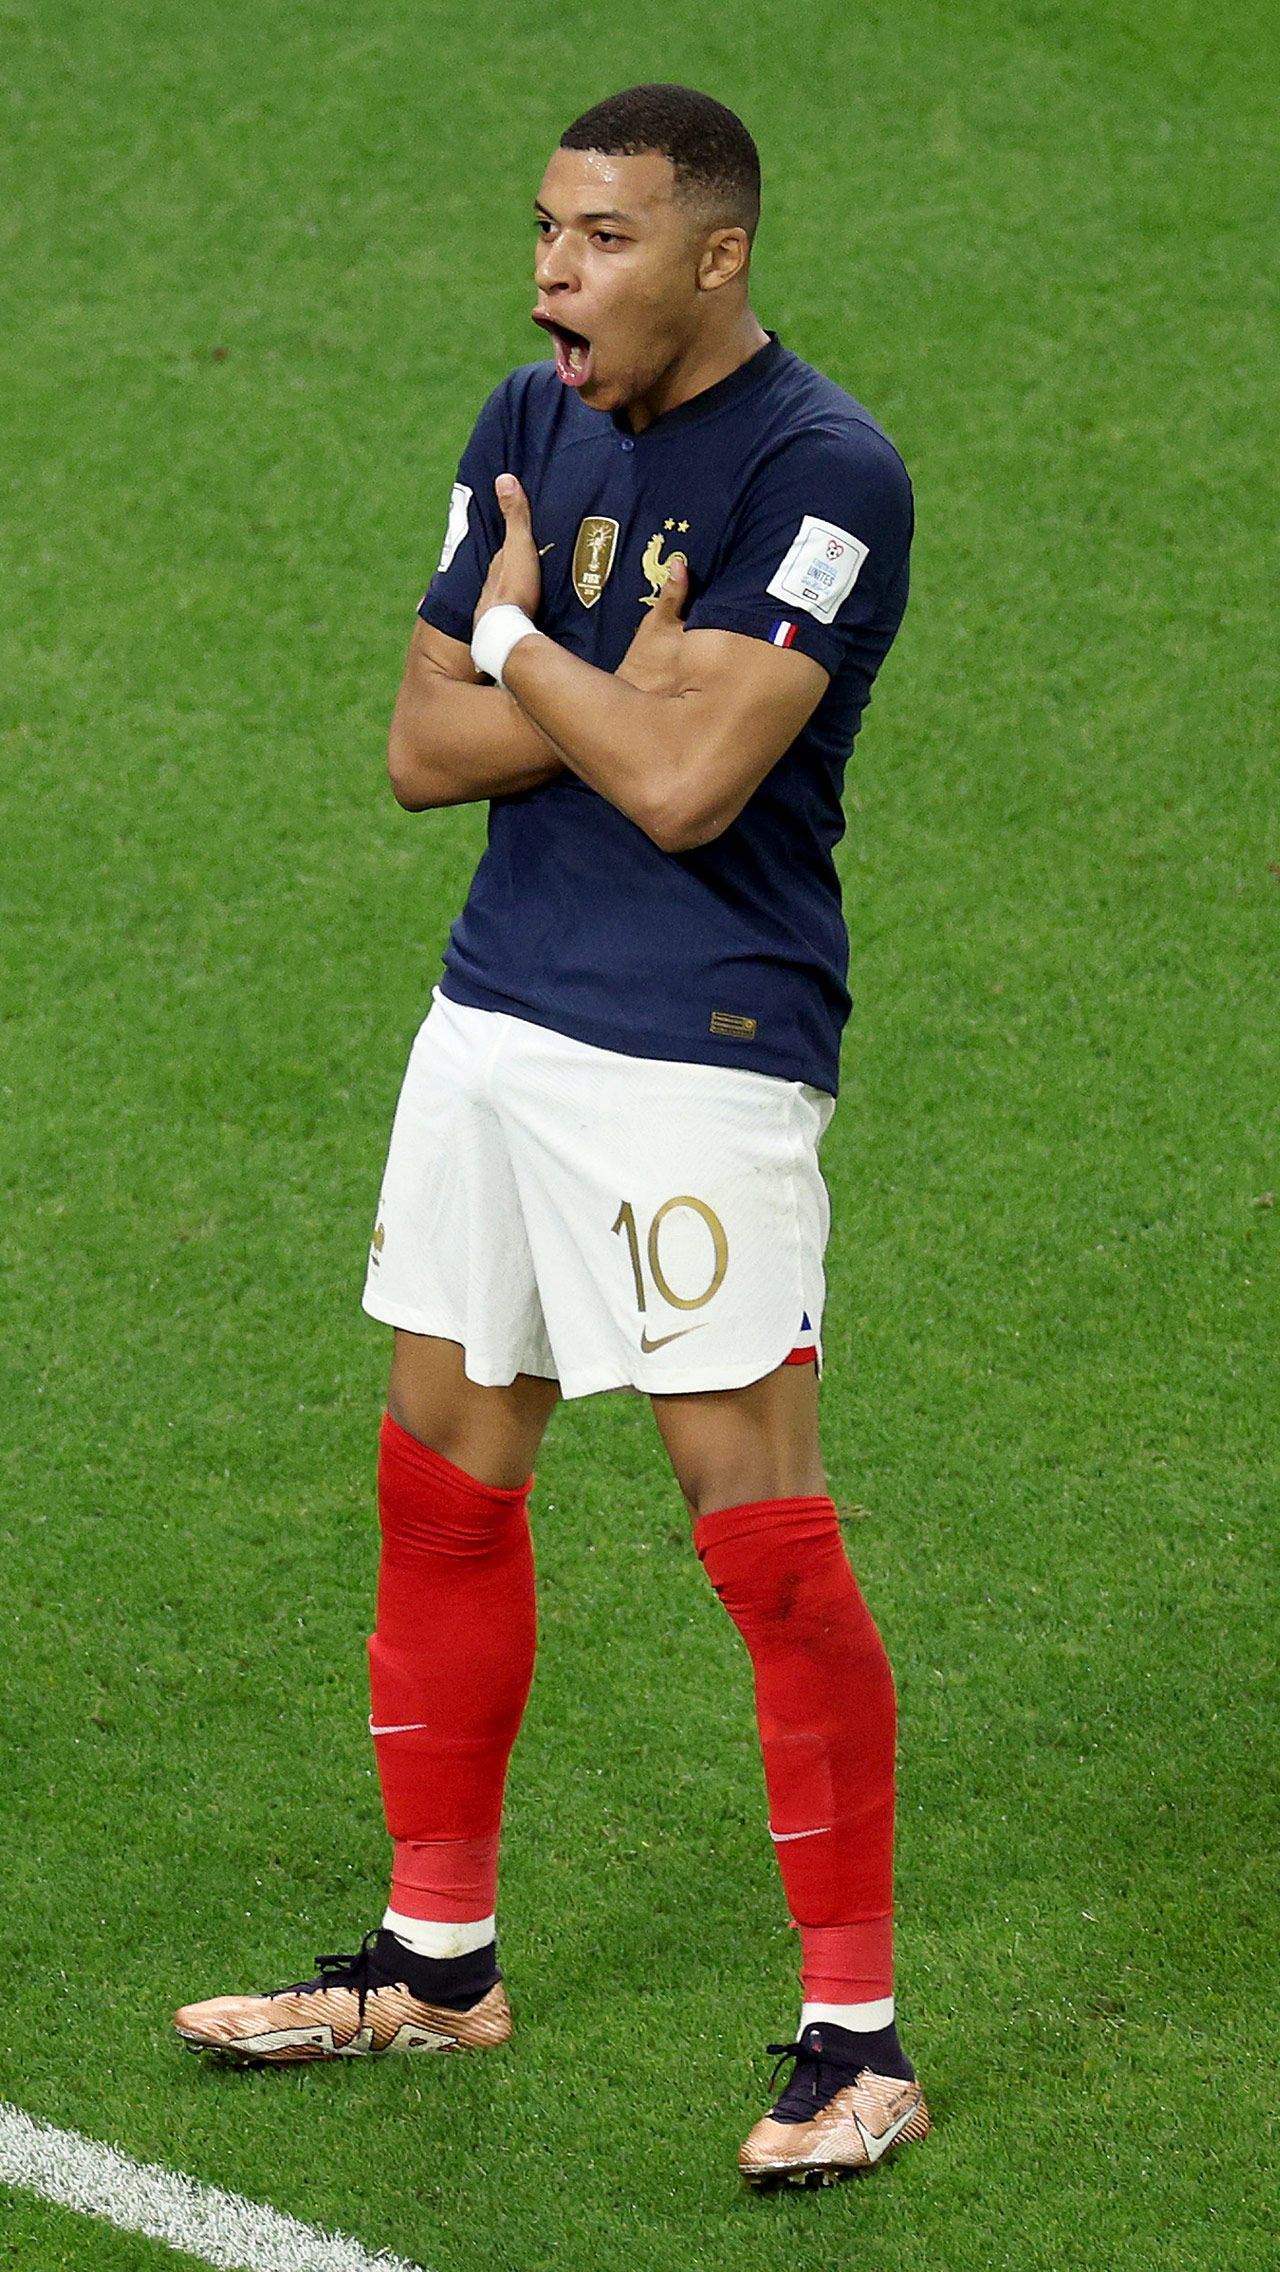 В 1/8 финала сборная Франции без шансов одолела польскую команду. Два из трёх голов забил как раз таки Мбаппе. Теперь в его активе девять мячей на мировых первенствах.